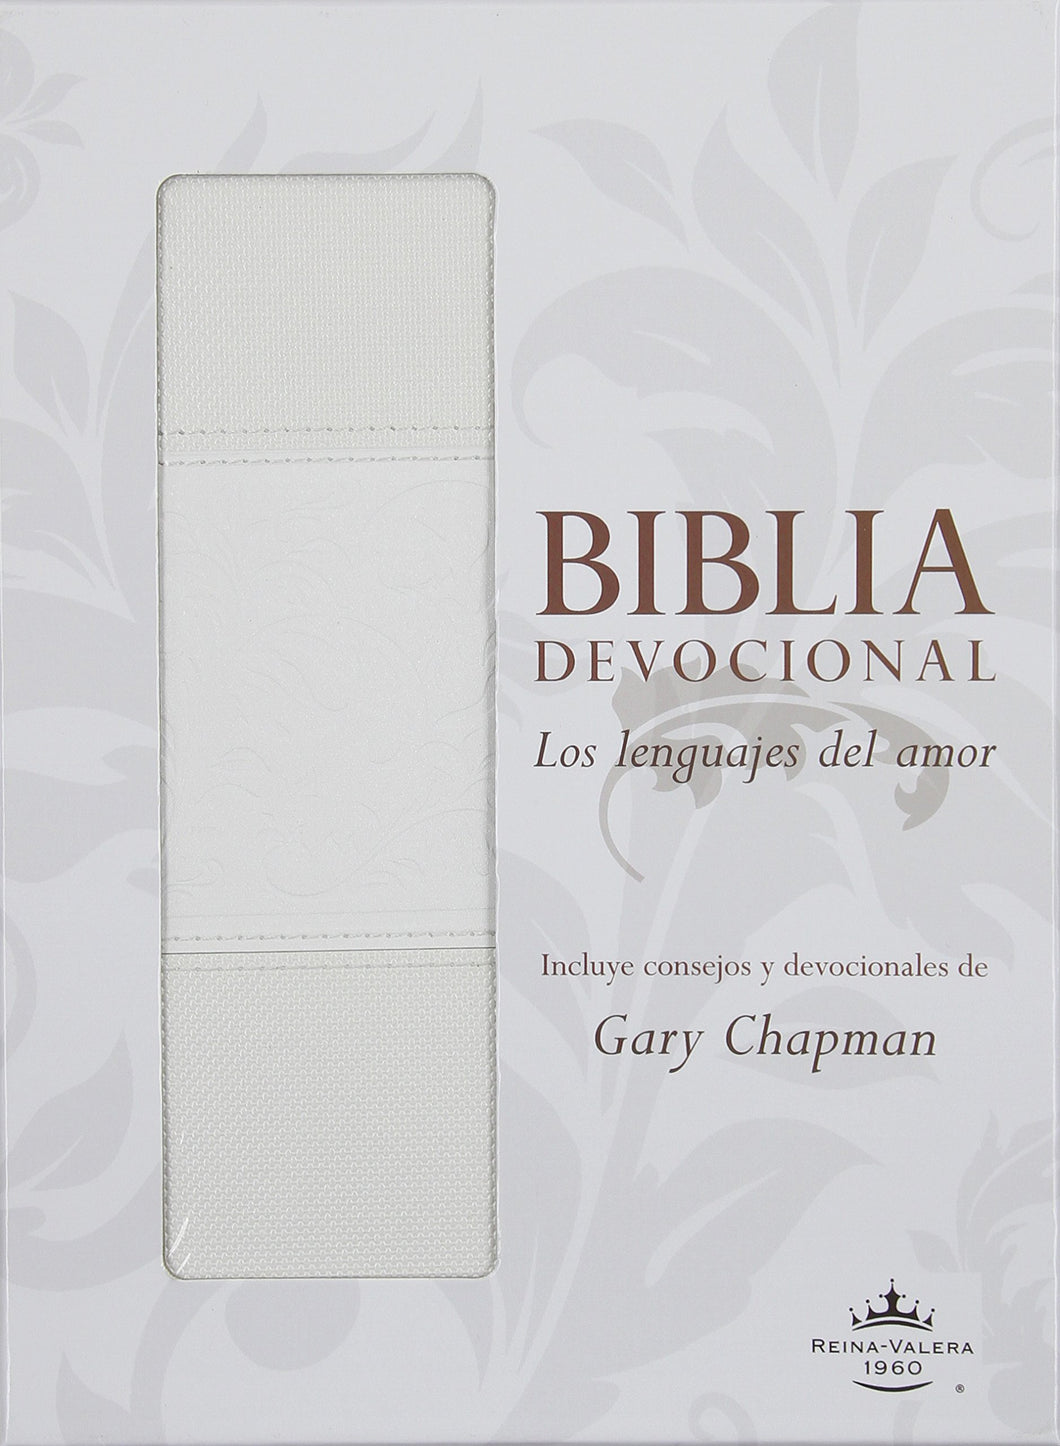 Biblia RVR60 - Devocional - Los Lenguajes del Amor - Duotono Blanco - Gary Chapman